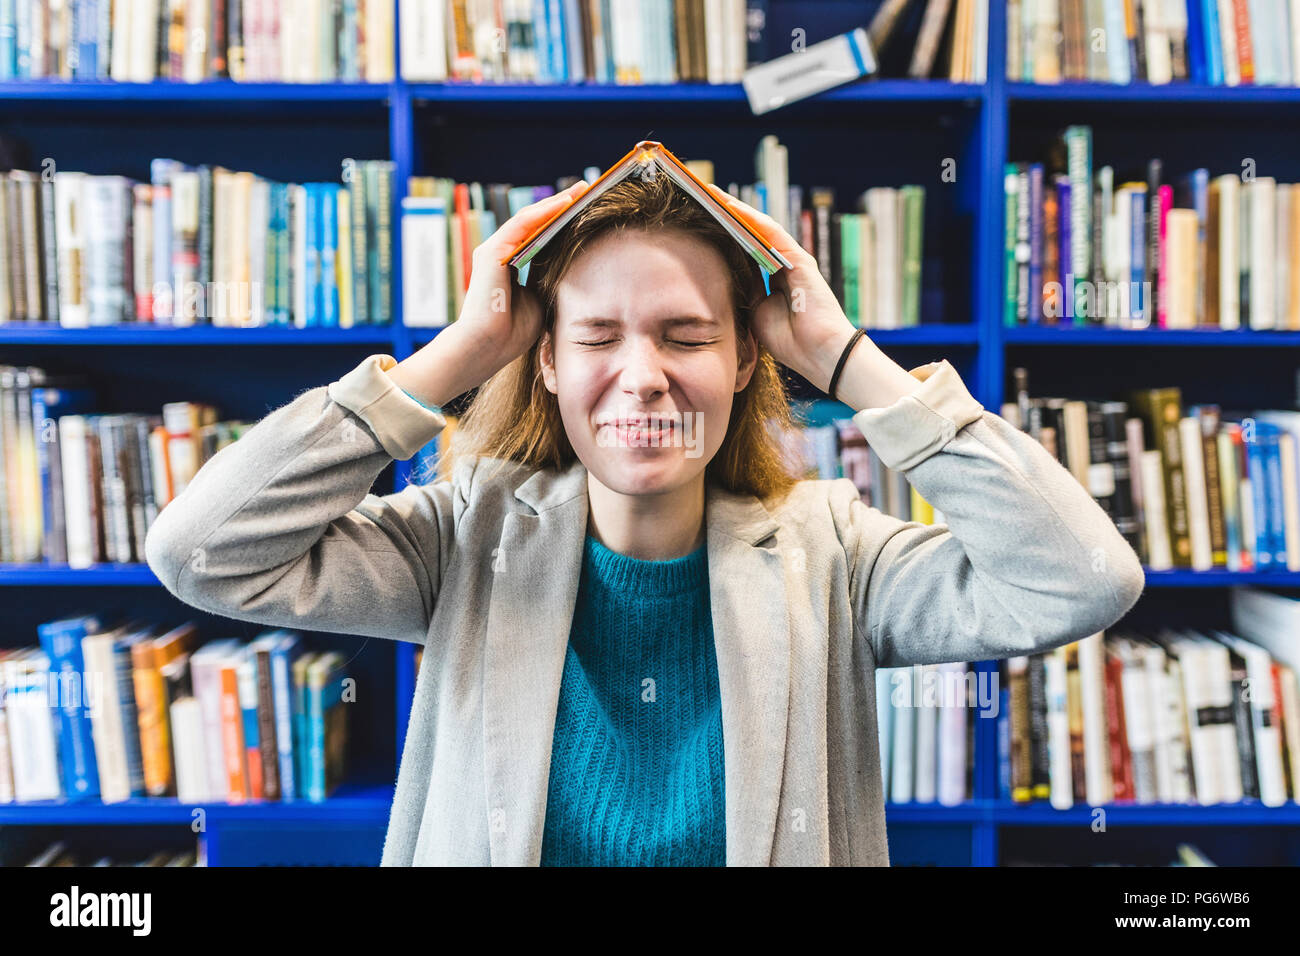 Portrait of teenage girl avec livre sur sa tête dans une bibliothèque publique Banque D'Images